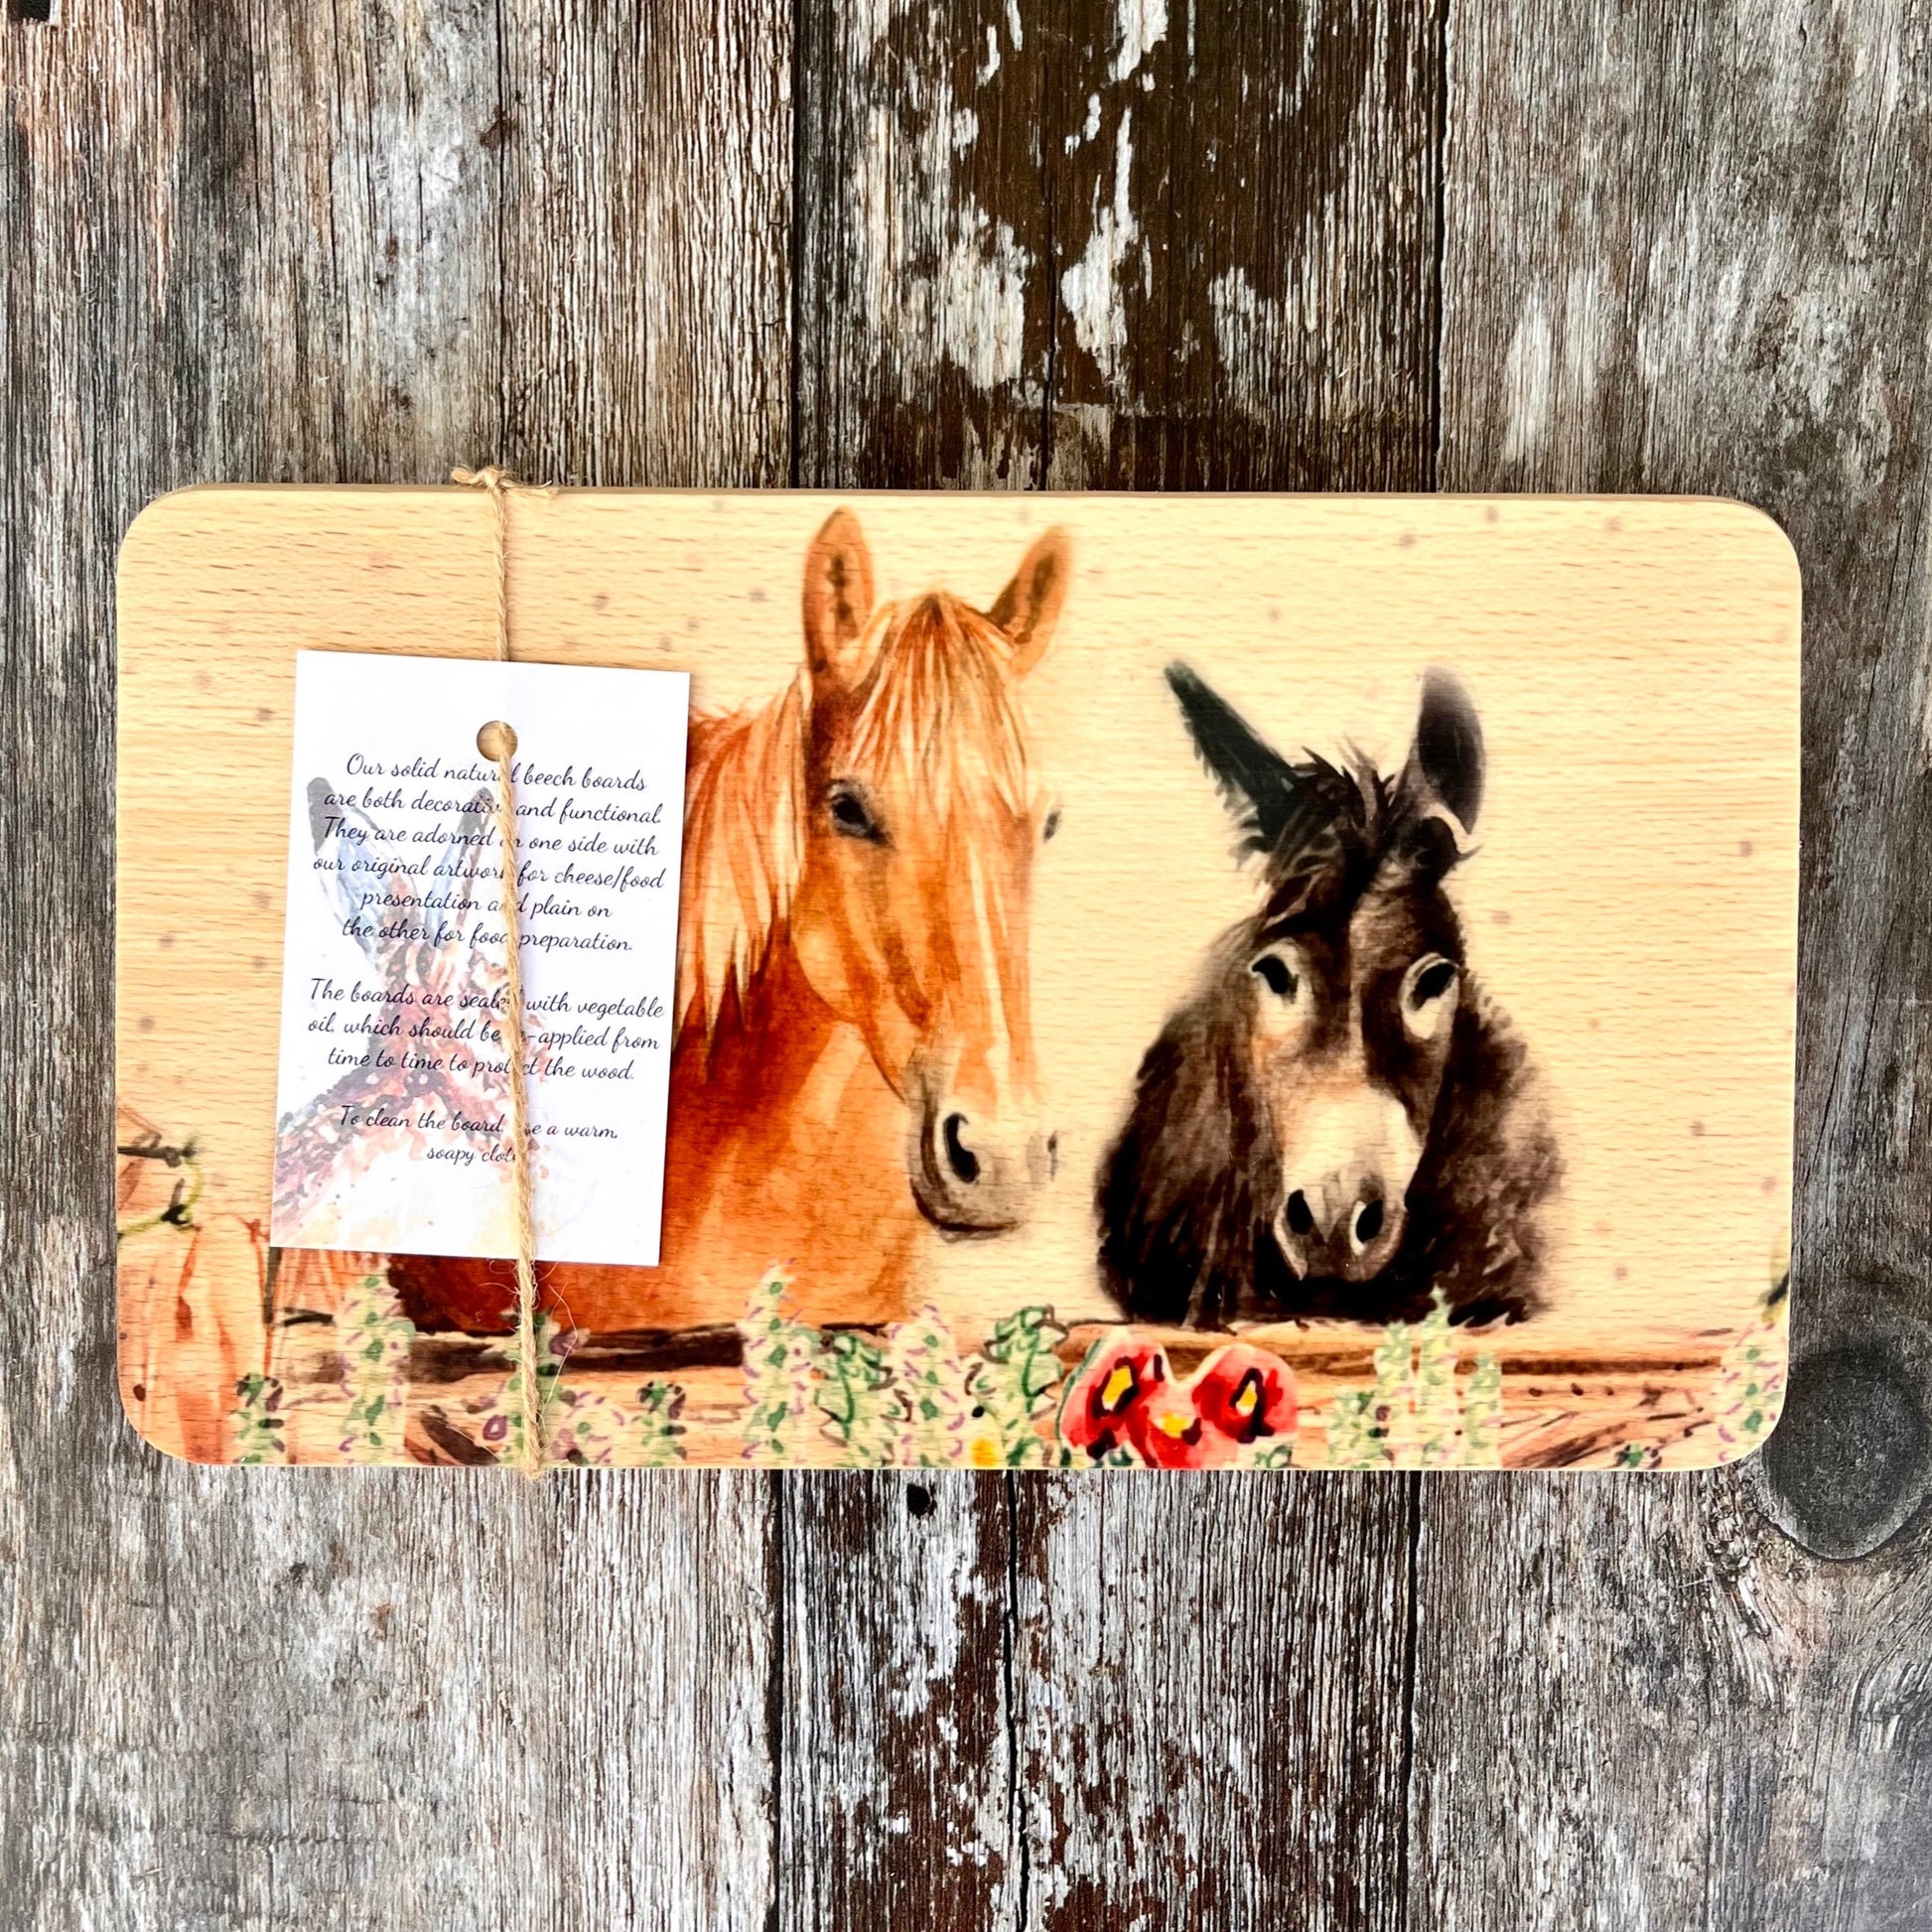 Horse & Donkey Wooden Board